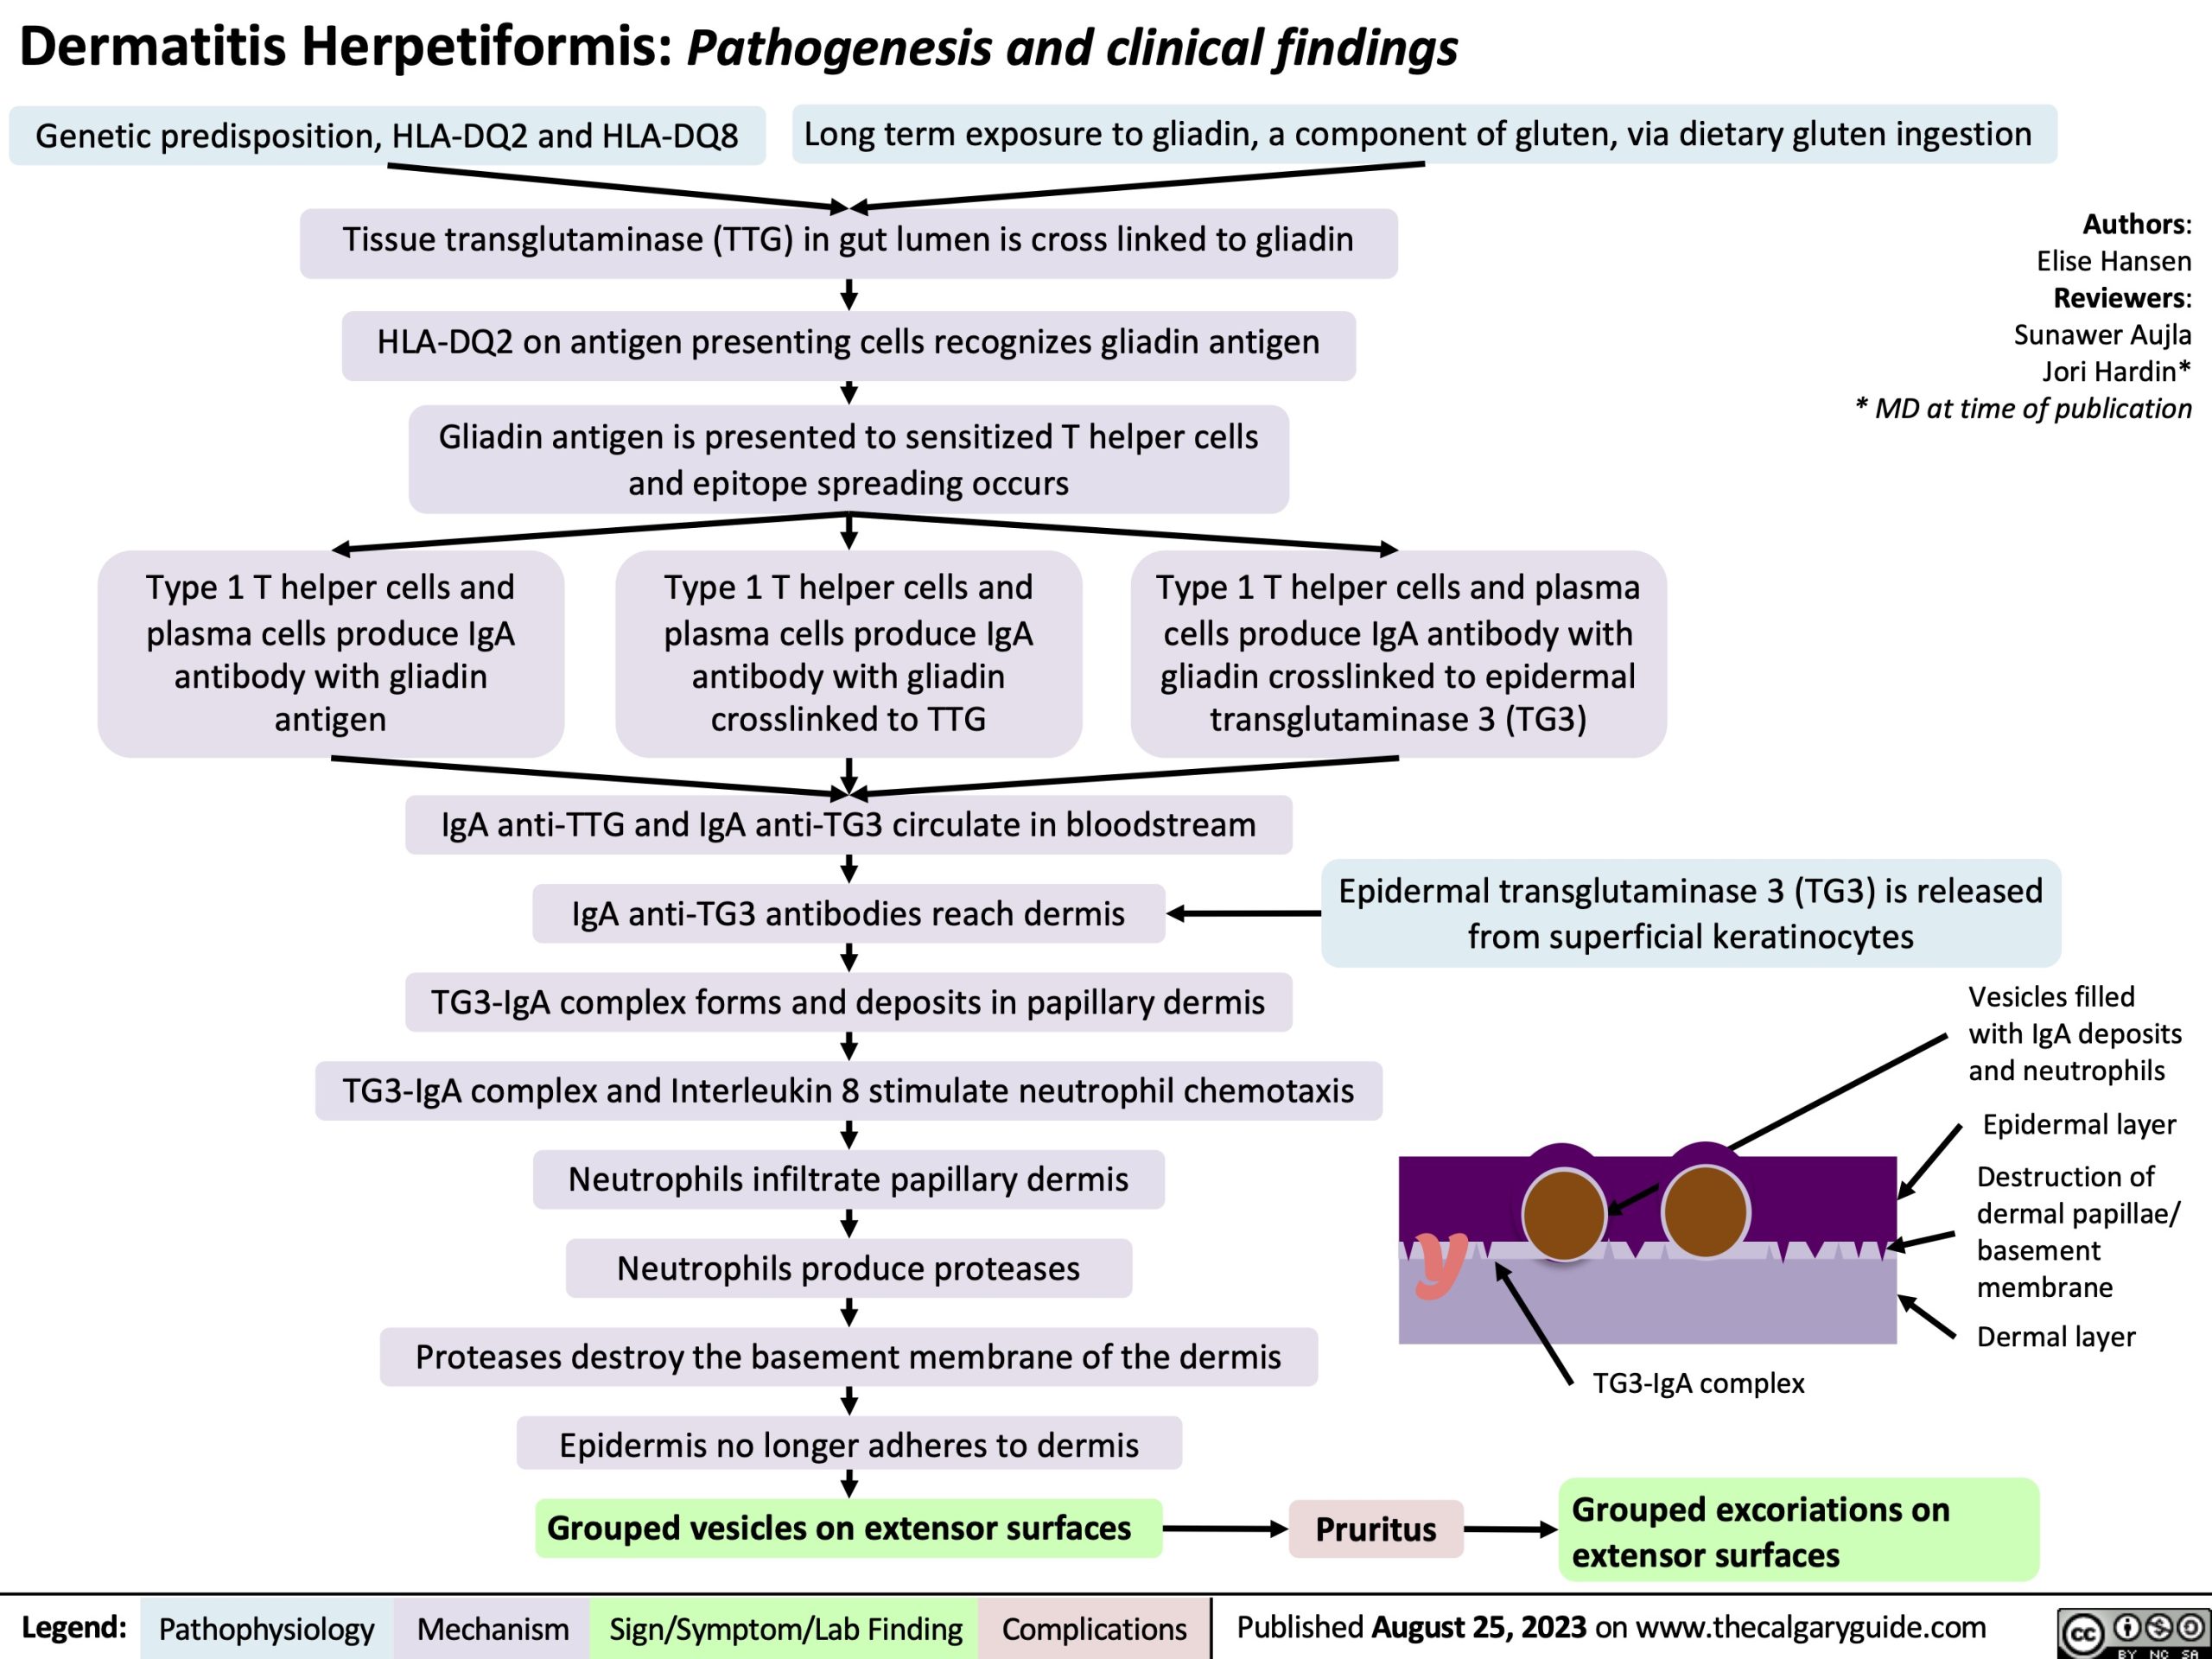 Dermatitis herpetiformis: pathogenesis and clinical findings | Calgary ...